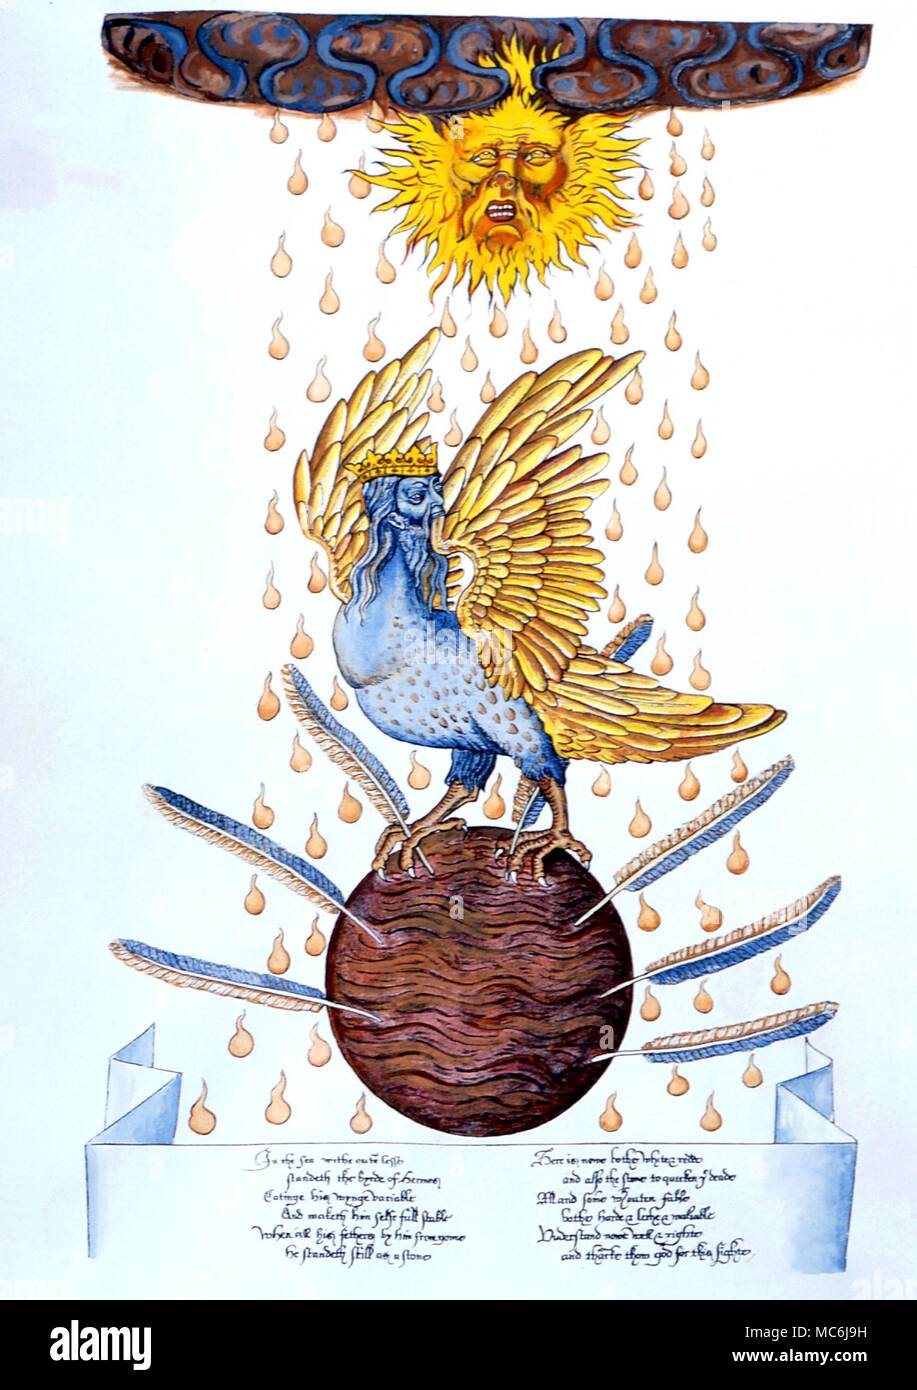 L'alchimie - l'oiseau d'Hermès - Détail de la 16e siècle restauré 'Ripley Scroll" Écrit et illustré par Sir George Ripley de Bridlington. Collection privée. Banque D'Images